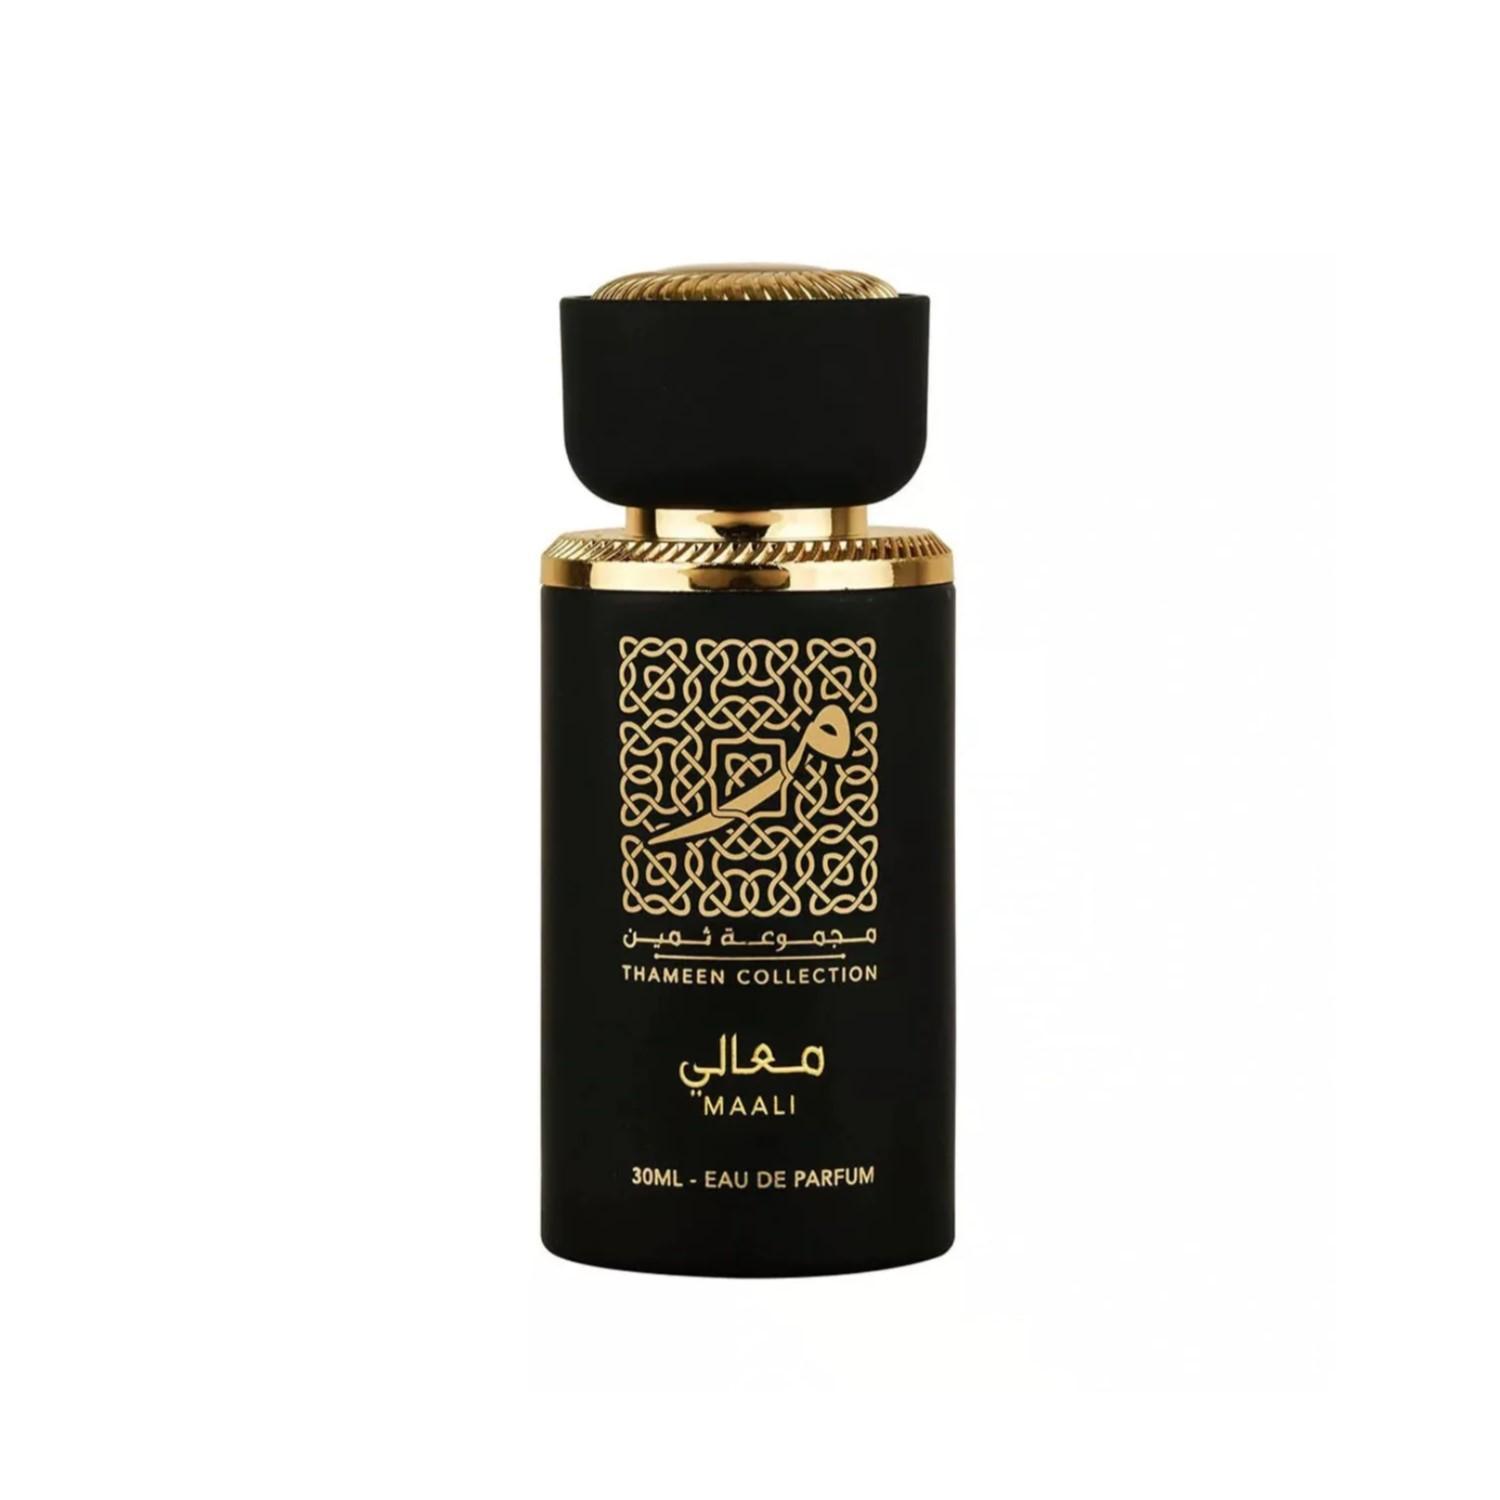 Maali (Thameen Collection) Perfume Eau De Parfum 30Ml By Lattafa